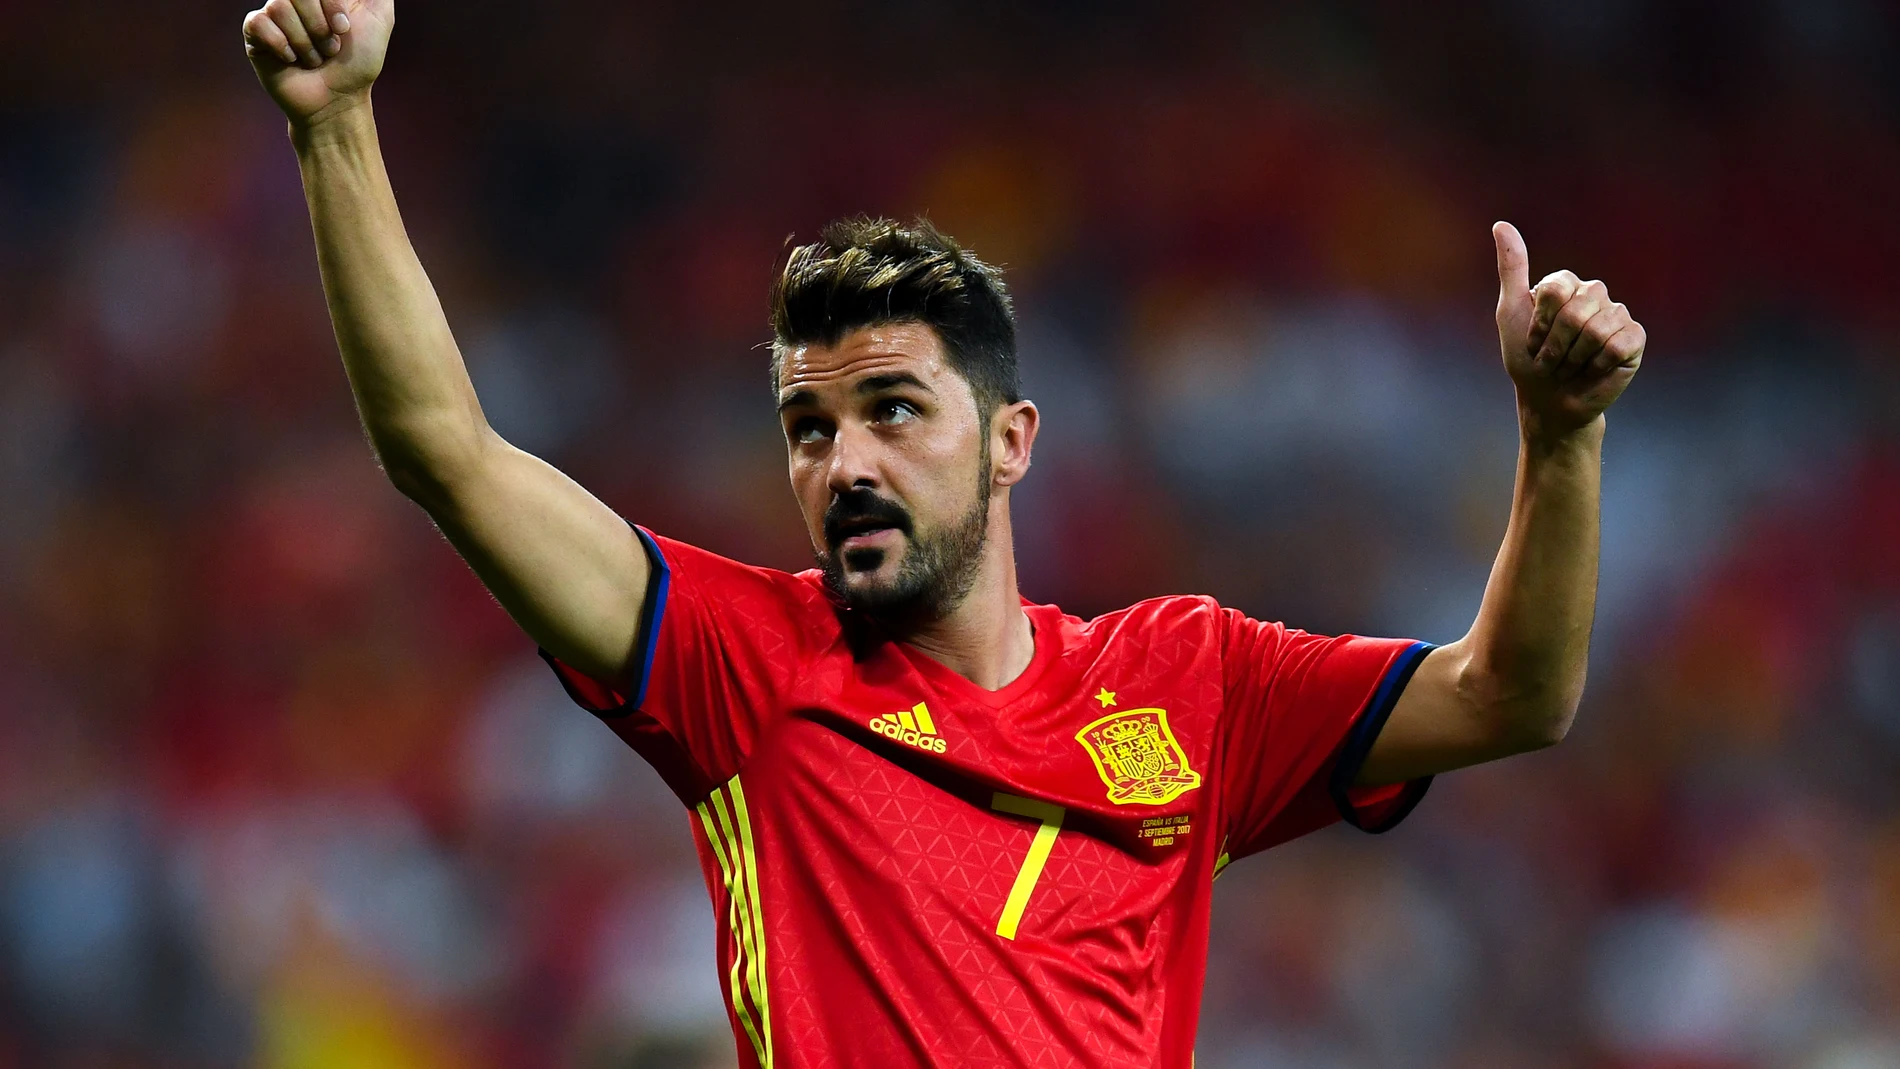 Villa vuelve jugar con Selección 38 meses después: "Una gran noche para mí y para España"